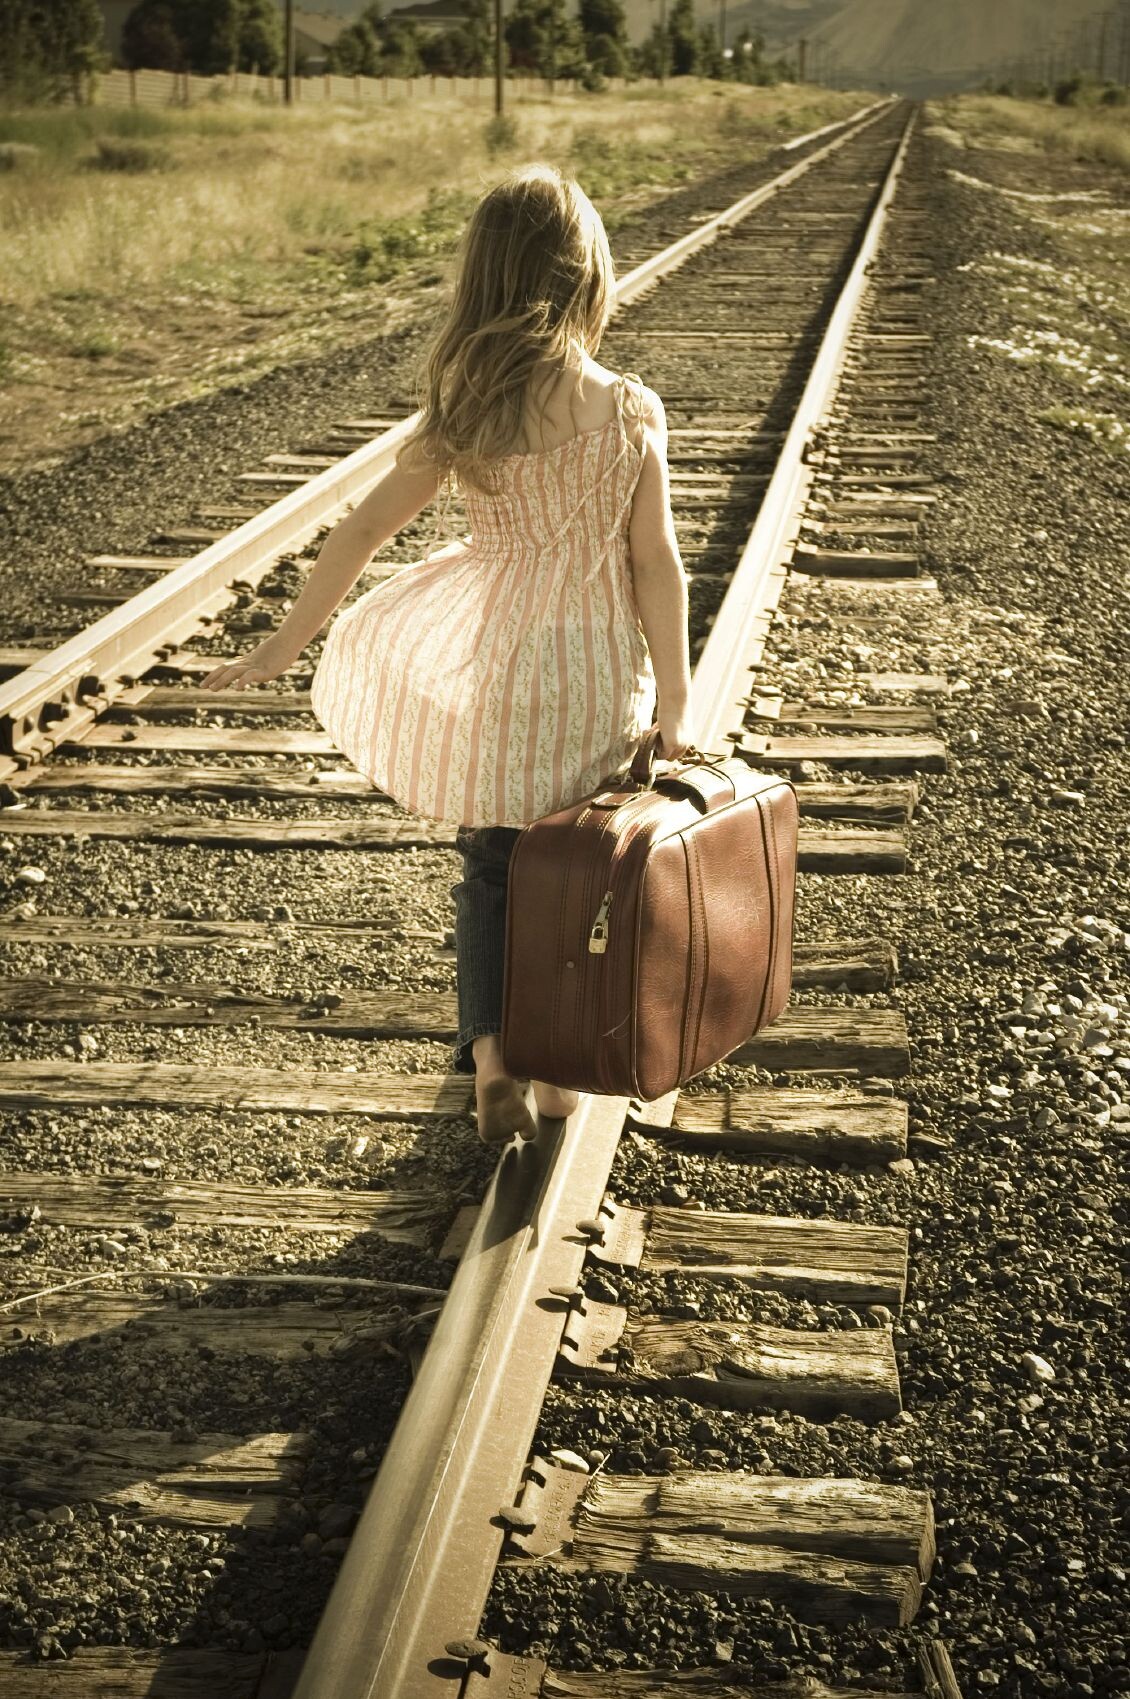 Дочь уезжает жить. Чемодан для девочек. Девушка с чемоданом уходит. Девочка на рельсах. Фотосессия на рельсах.